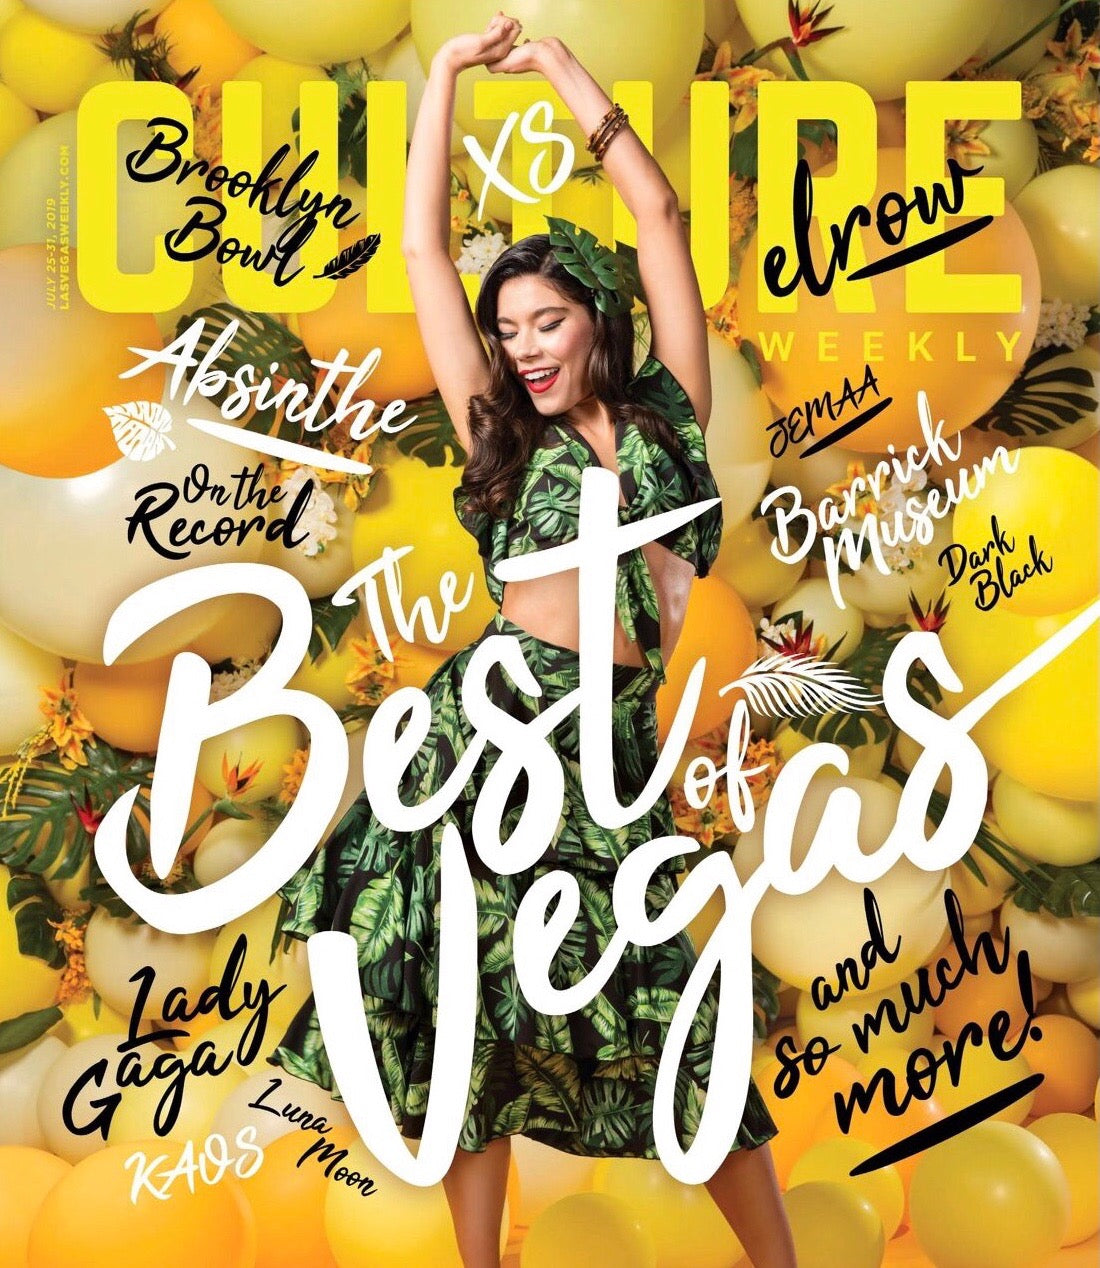 Las Vegas Weekly "Best of Las Vegas" Issue!